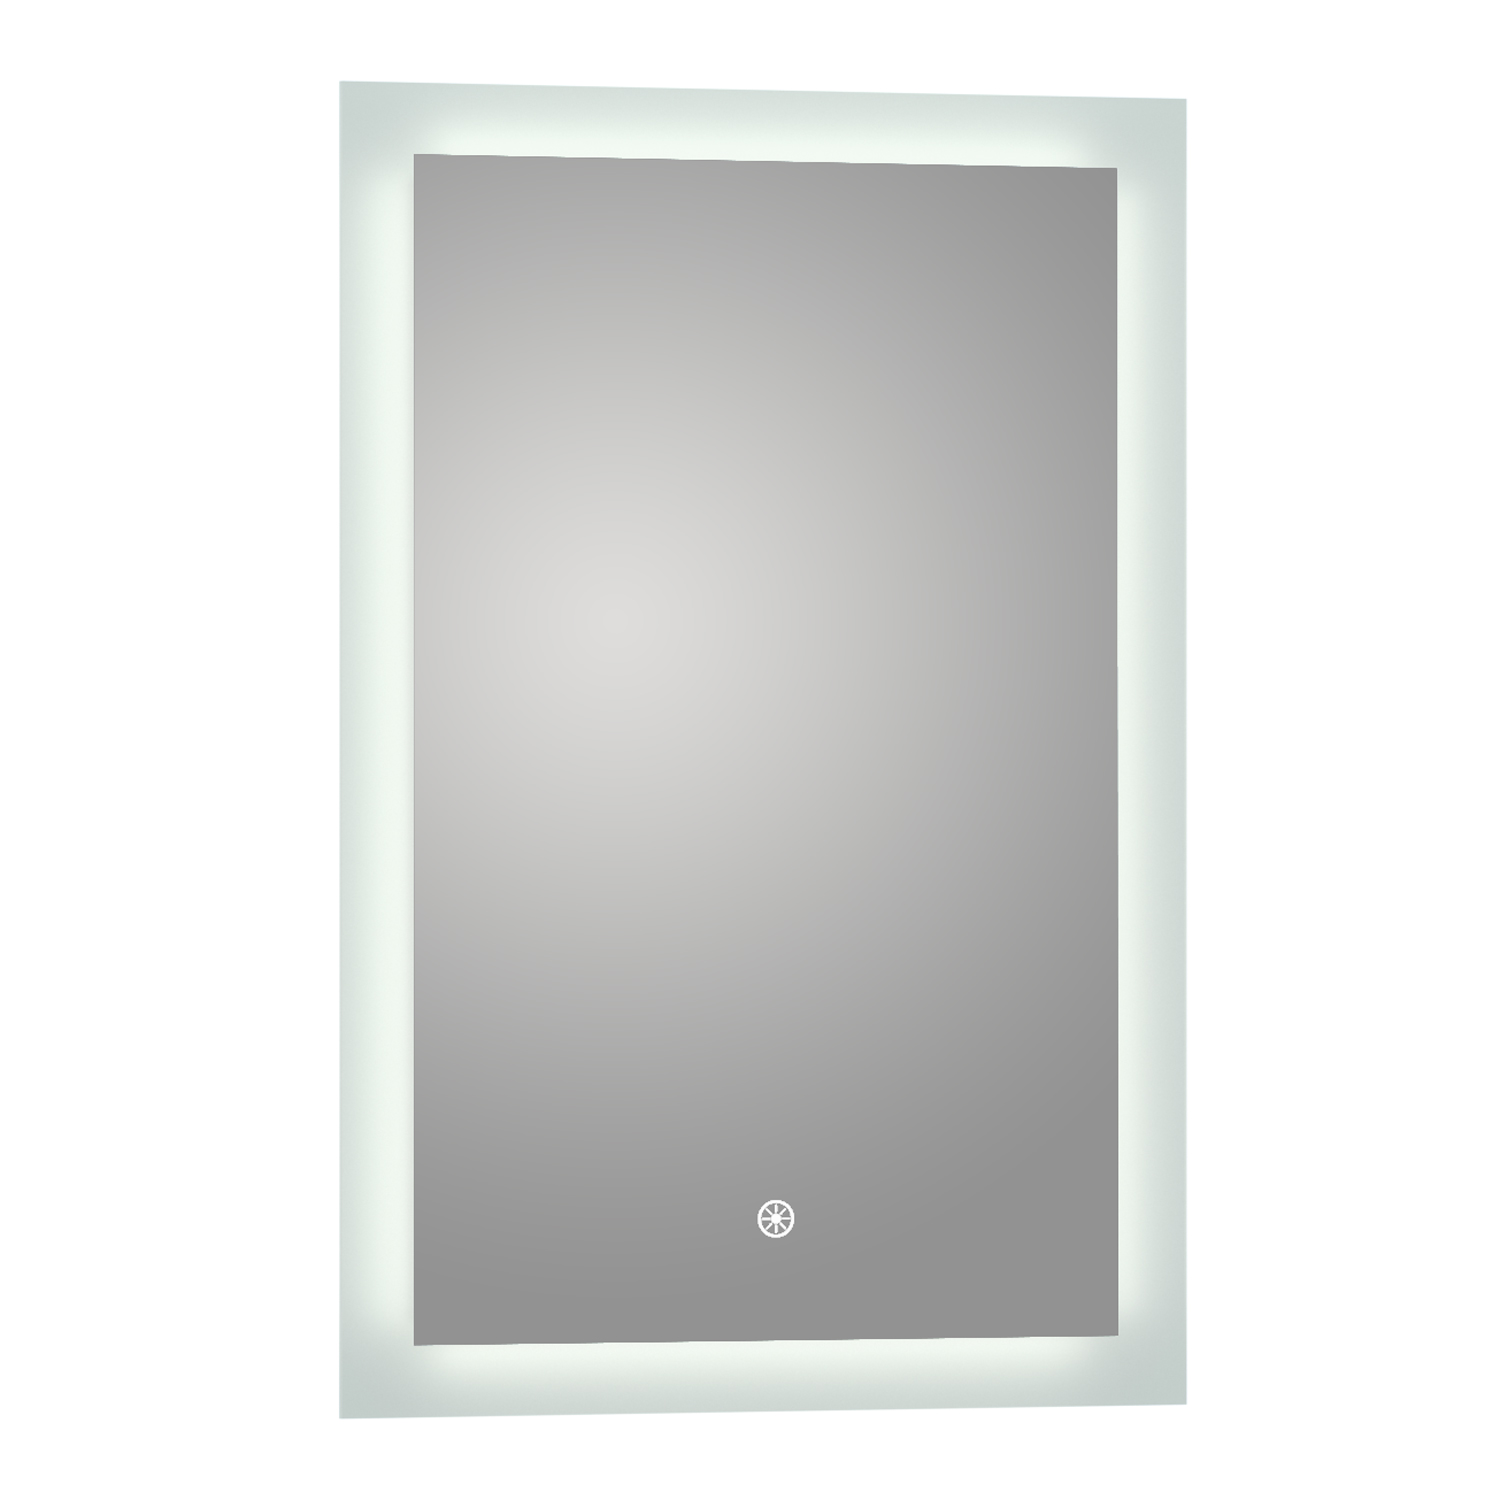 Luxaar Puralite 24 " x 36 " LED Wall Mounted Backlit Vanity Mirror  BLM2436